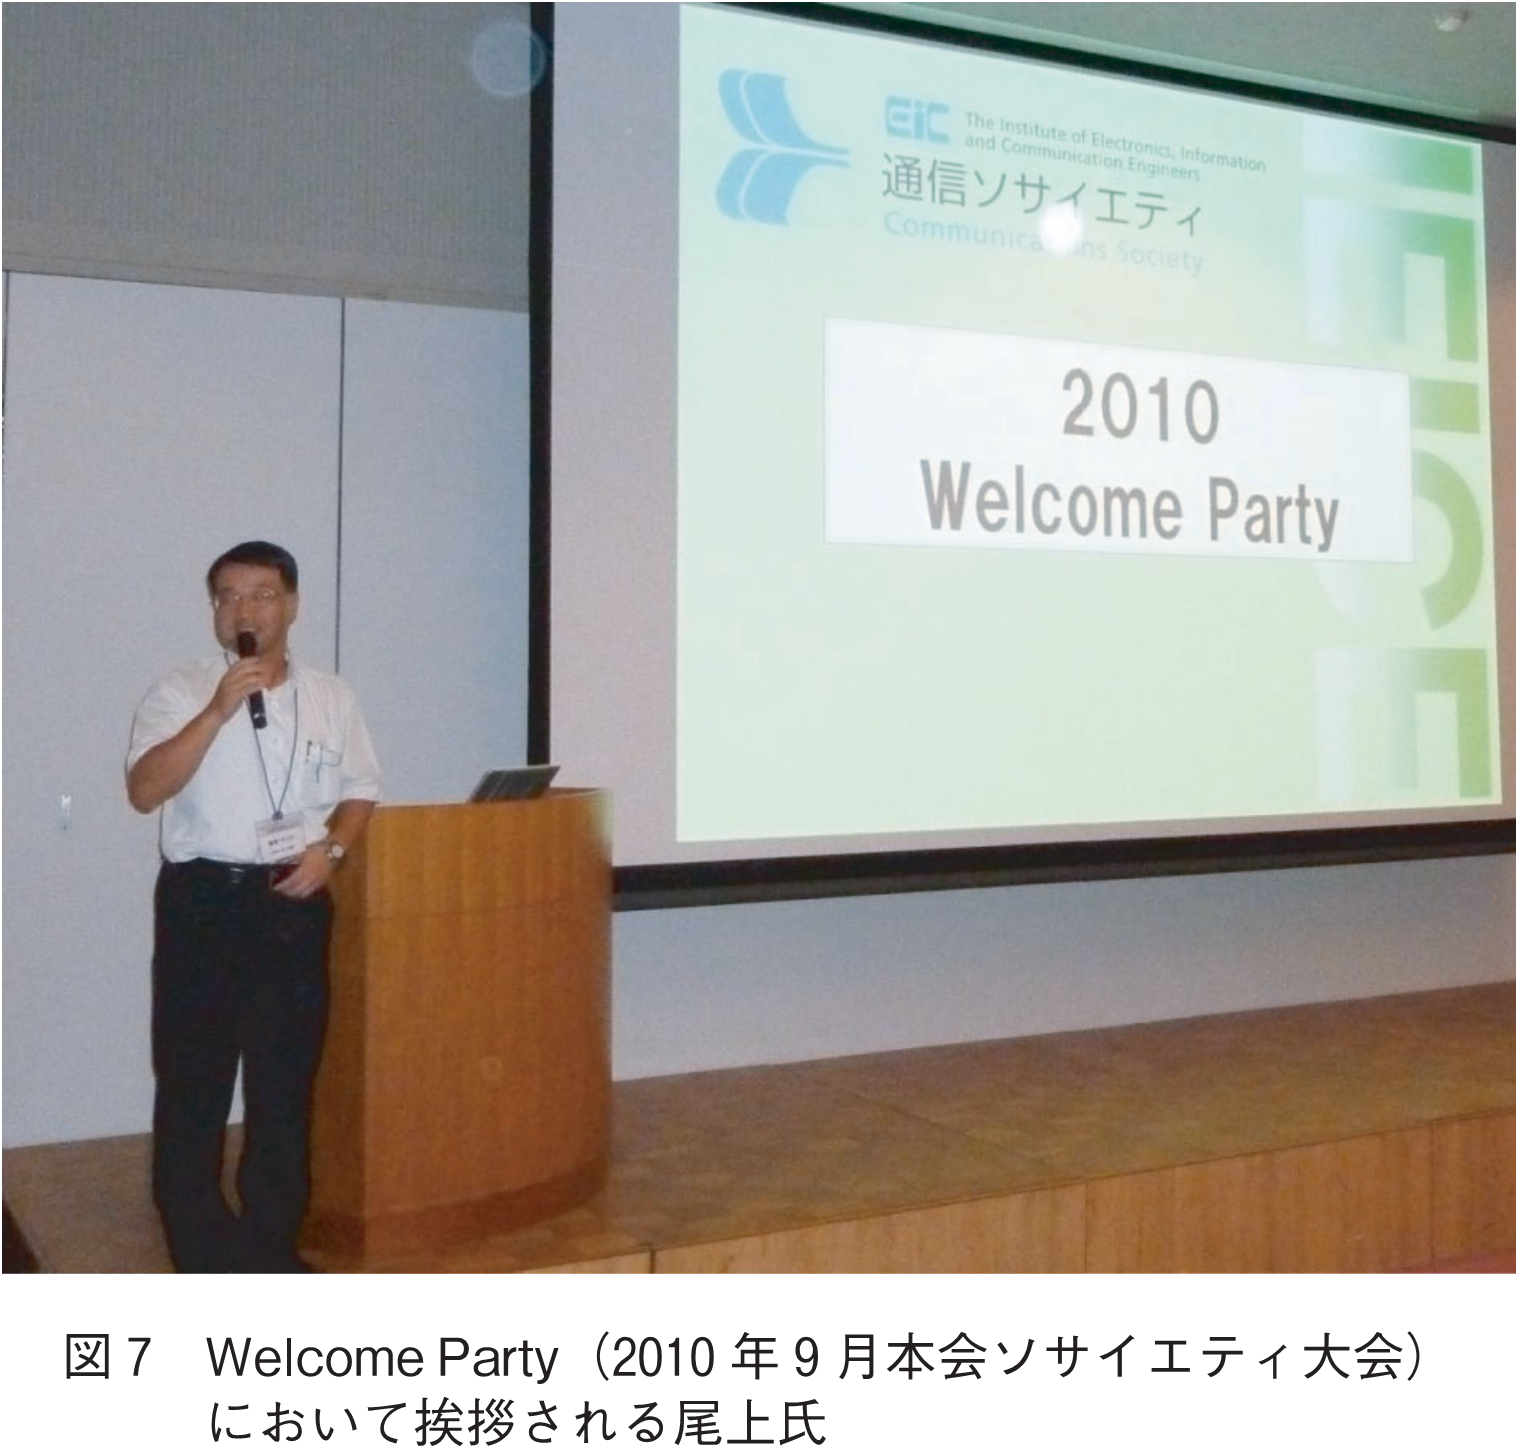 図7　Welcome Party（2010年9月本会ソサイエティ大会）において挨拶される尾上氏